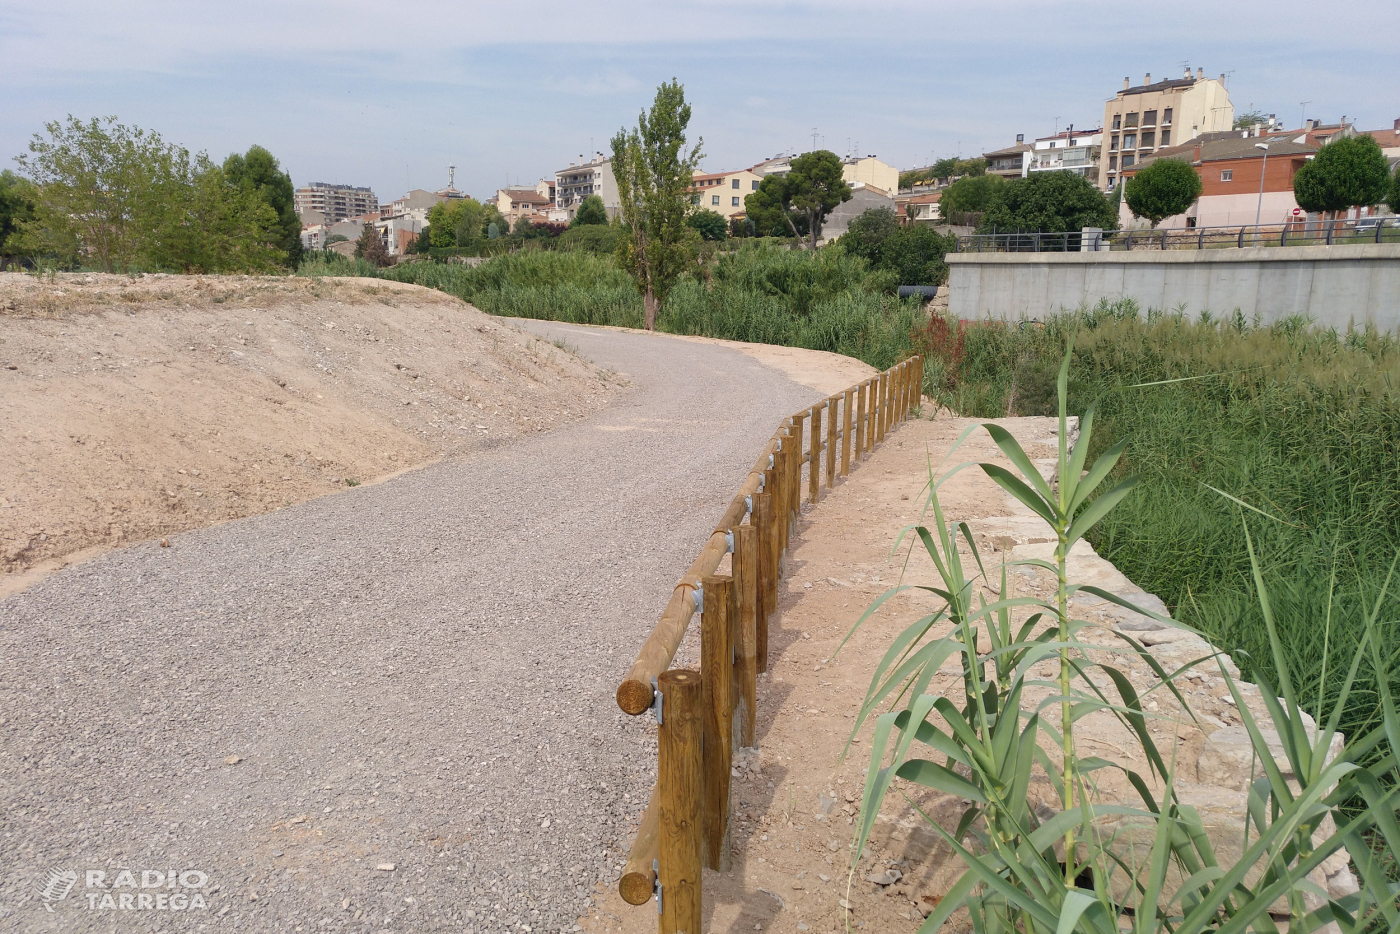 L’Ajuntament de Tàrrega ultima els treballs per habilitar un nou espai de passeig vora la riba del riu Ondara